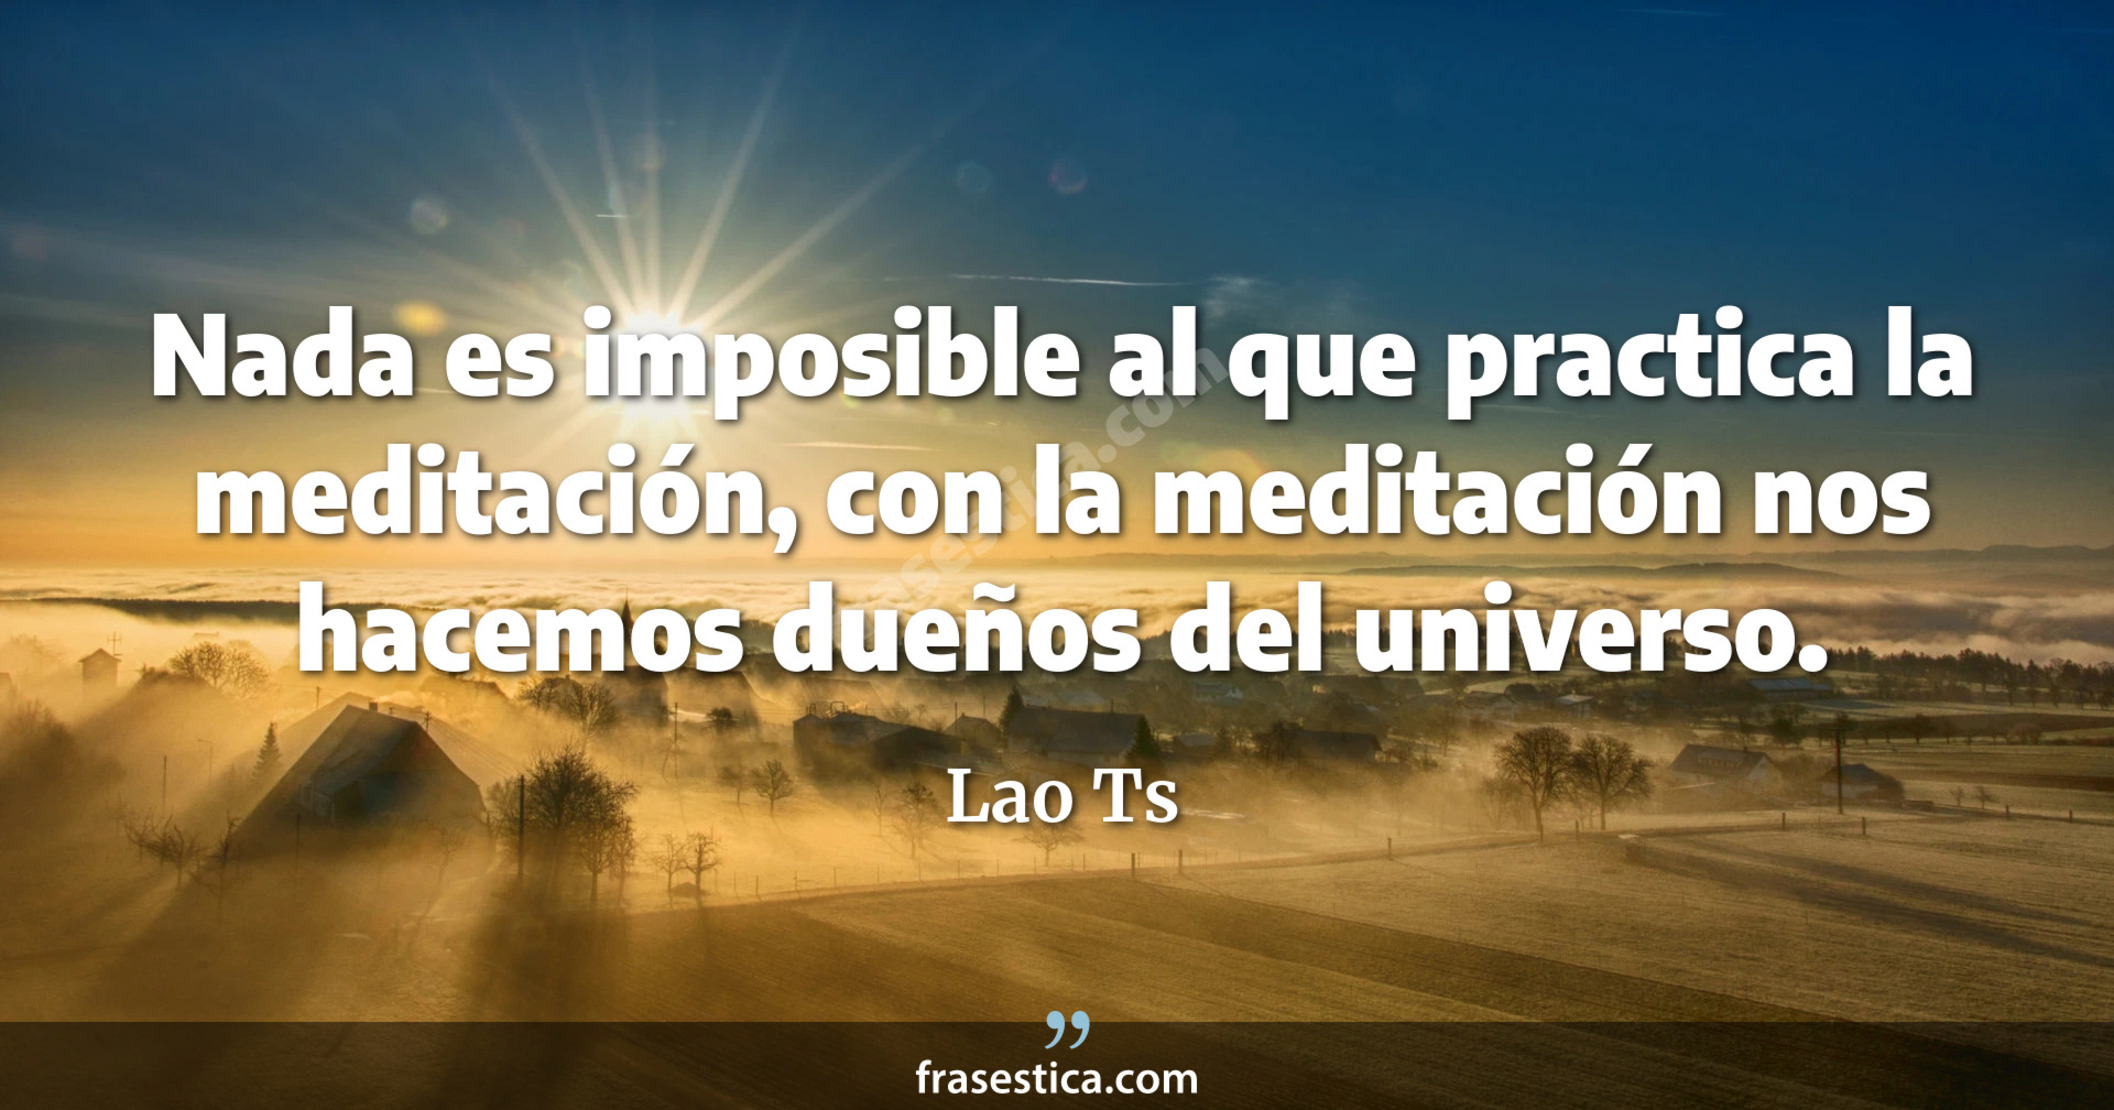 Nada es imposible al que practica la meditación, con la meditación nos hacemos dueños del universo. - Lao Ts